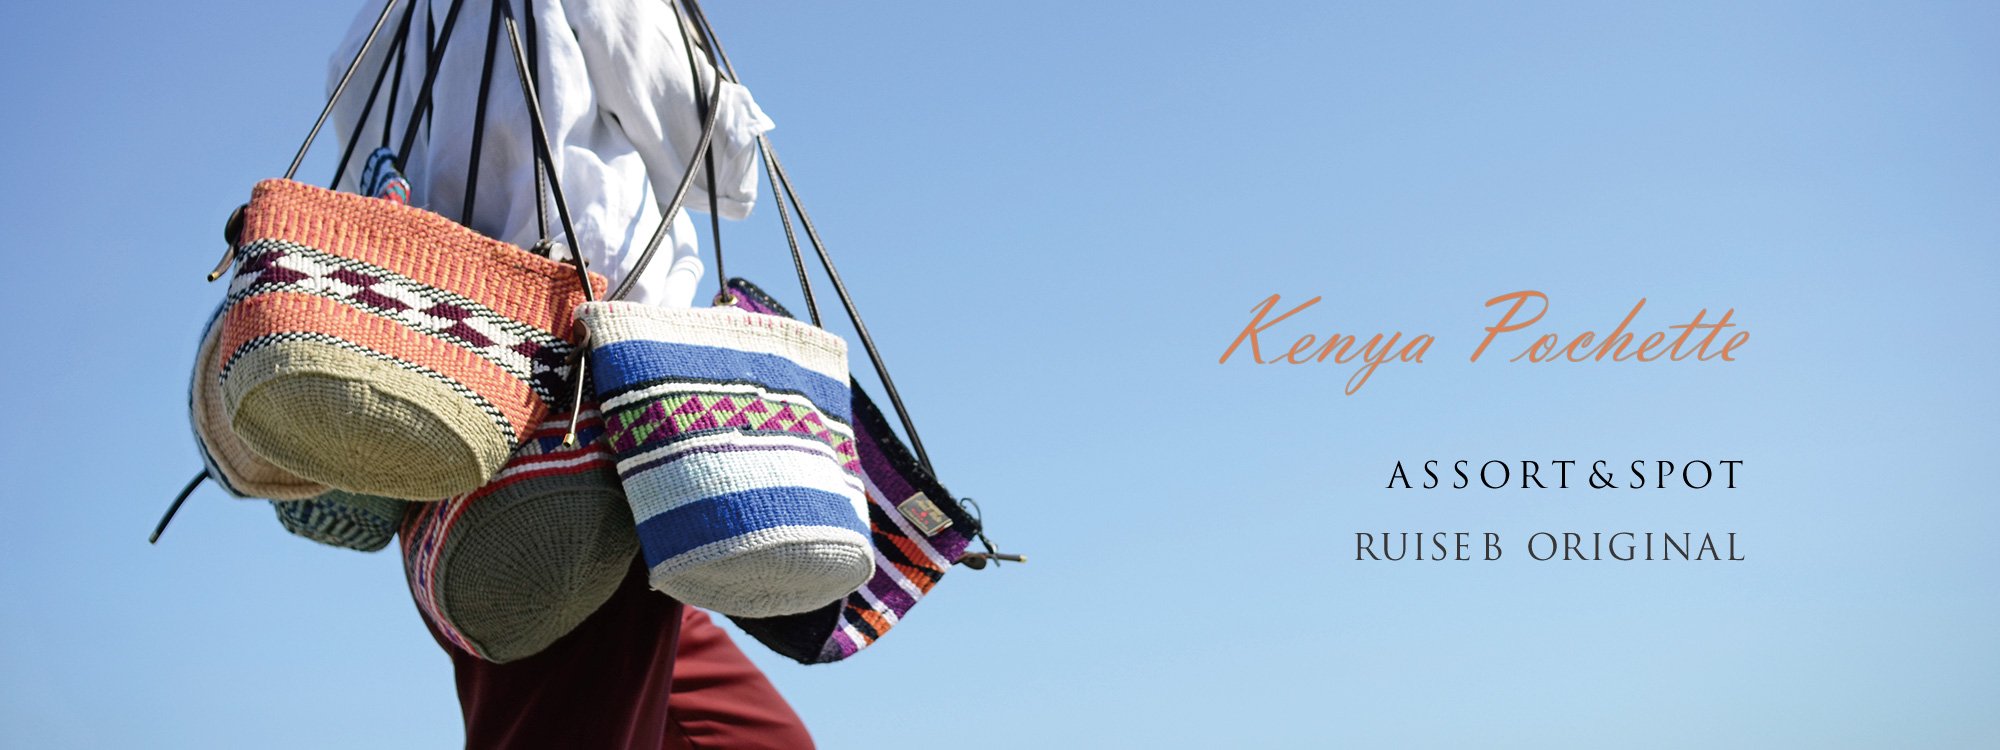 アソート【1点ものデザイン】＆スポット【今だけ】の特別な品、ケニアの女性が編むポシェット。Ruise B「ルイズビィ」